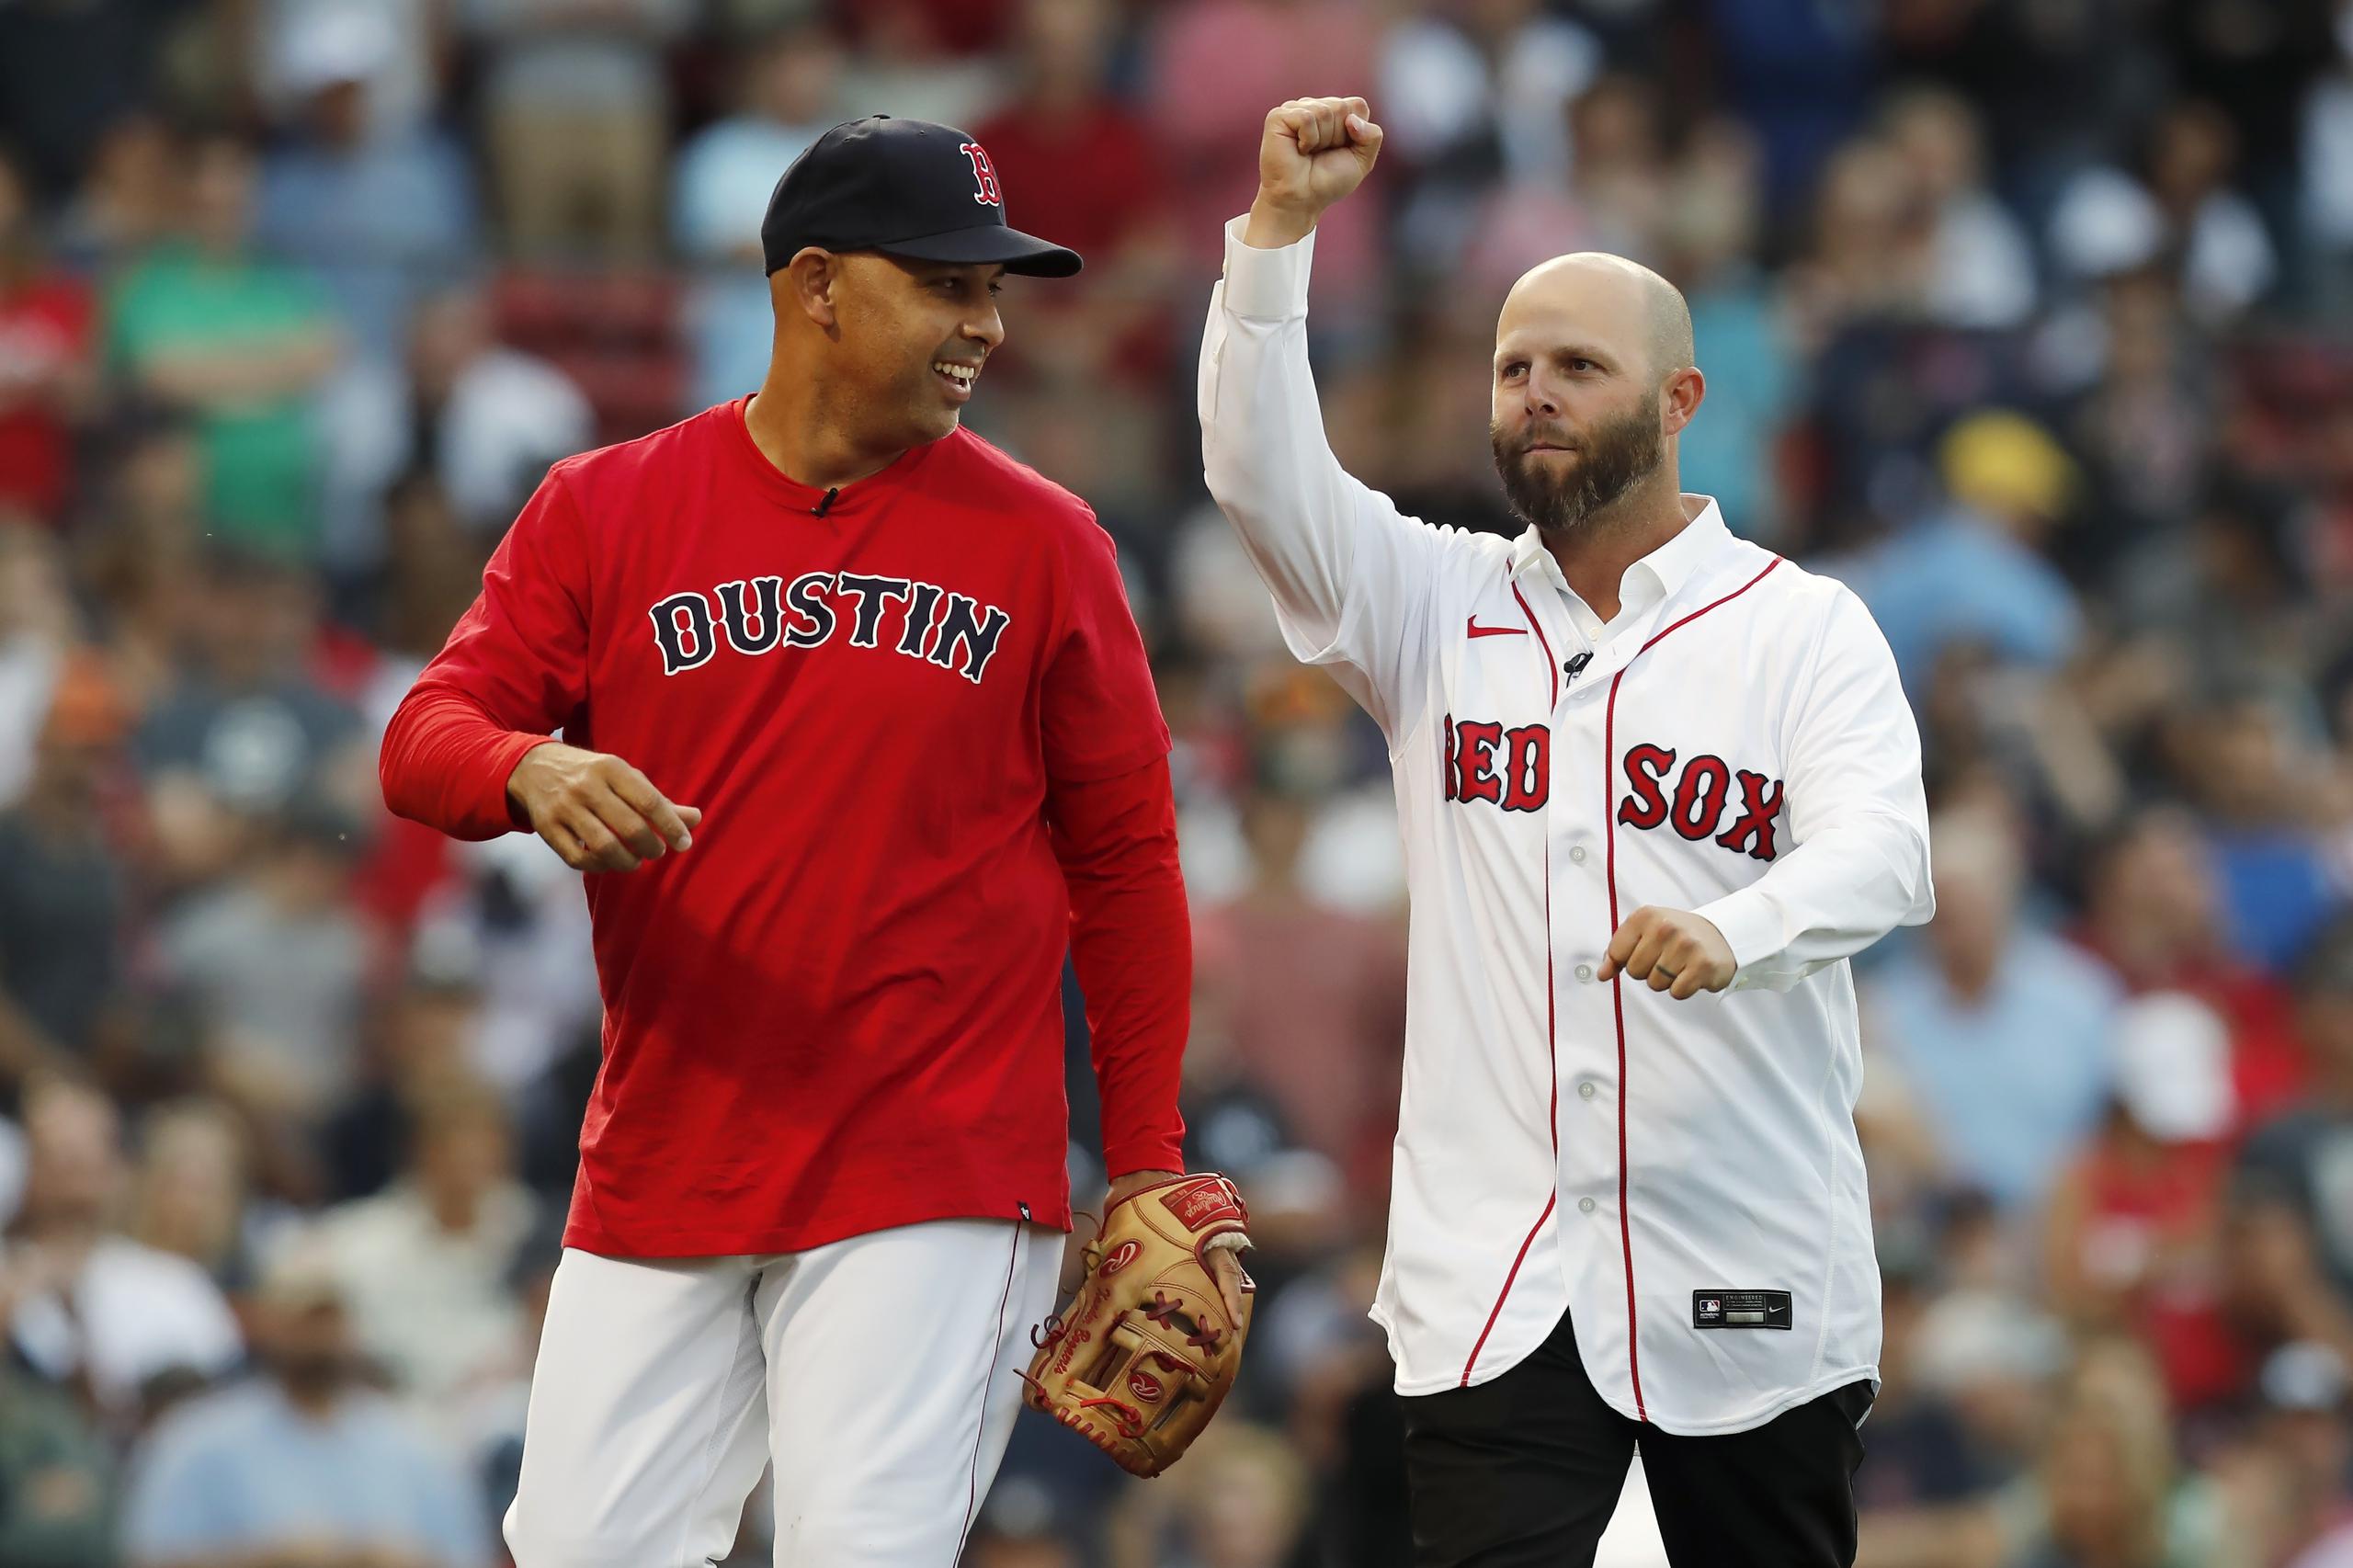 El ex intermedista de los Red Sox de Boston, Dustin Pedroia, fue homenajeado el viernes por la organización. Aquí aparece junto al dirigente Alex Cora.